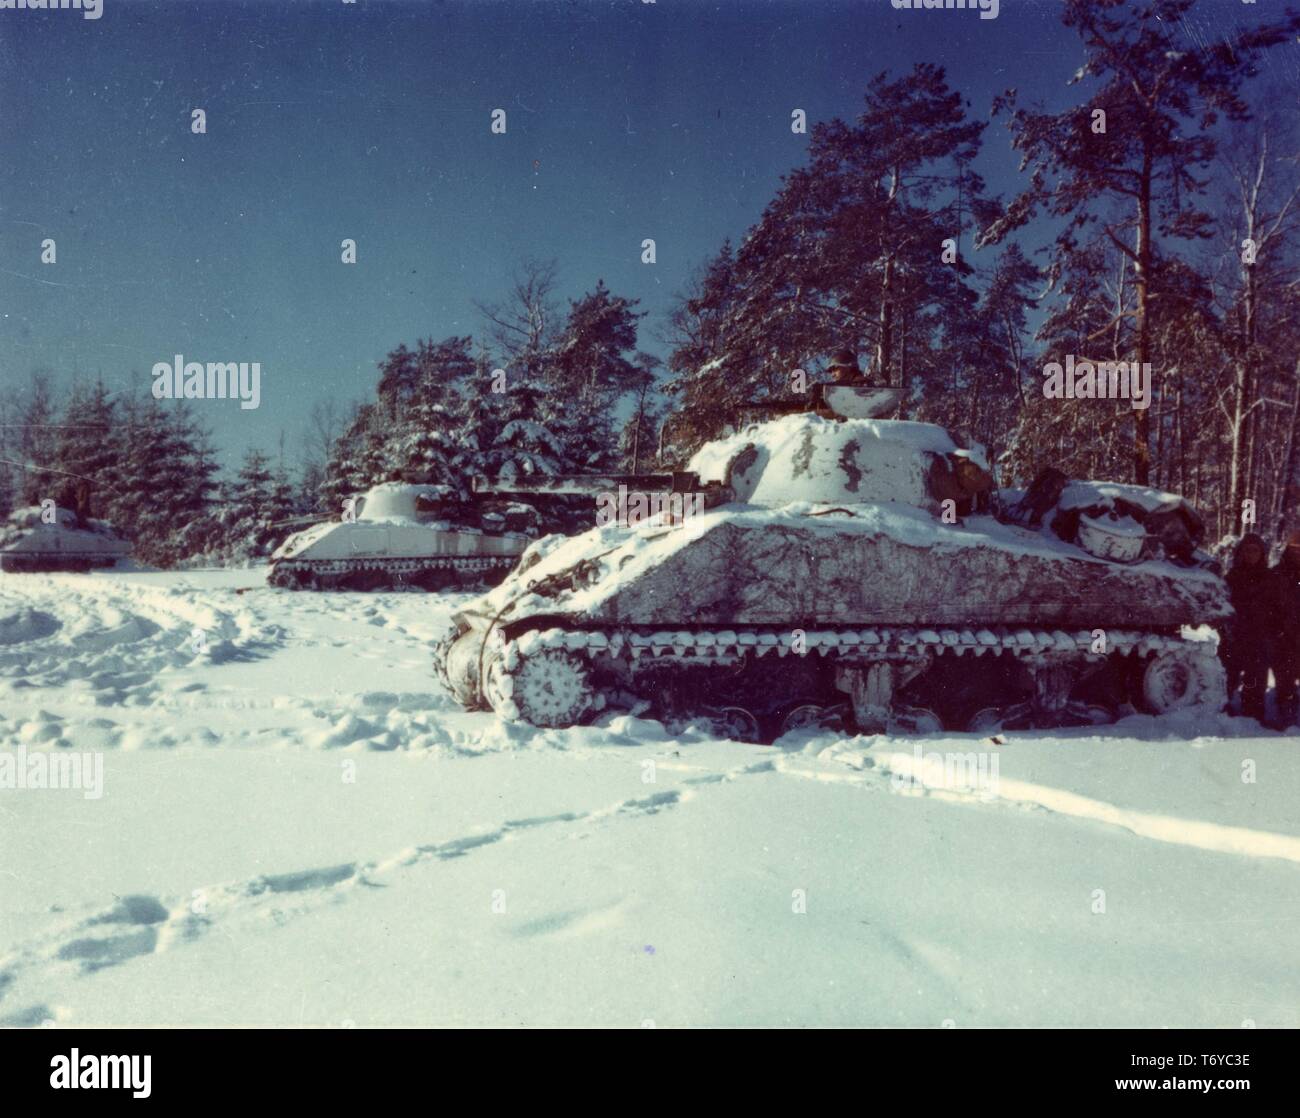 M-4 Sherman serbatoi del decimo battaglione serbatoio allineate su una coperta di neve campo durante la Battaglia di Bulge durante la II Guerra Mondiale, vicino a St Vith, Belgio, 1945. Immagine cortesia archivi nazionali. () Foto Stock